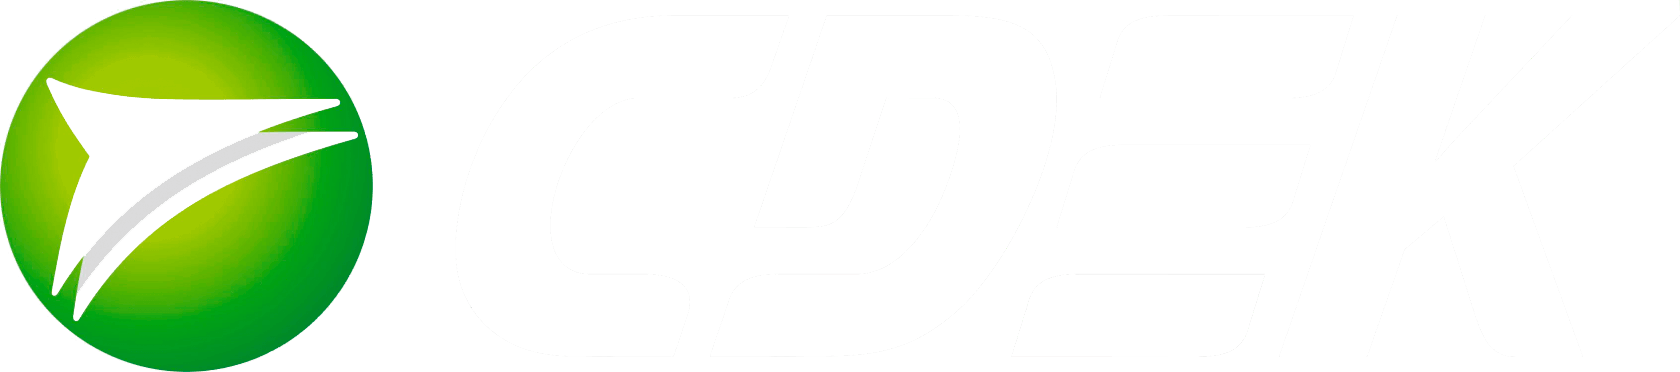 СДЭК логотип белый